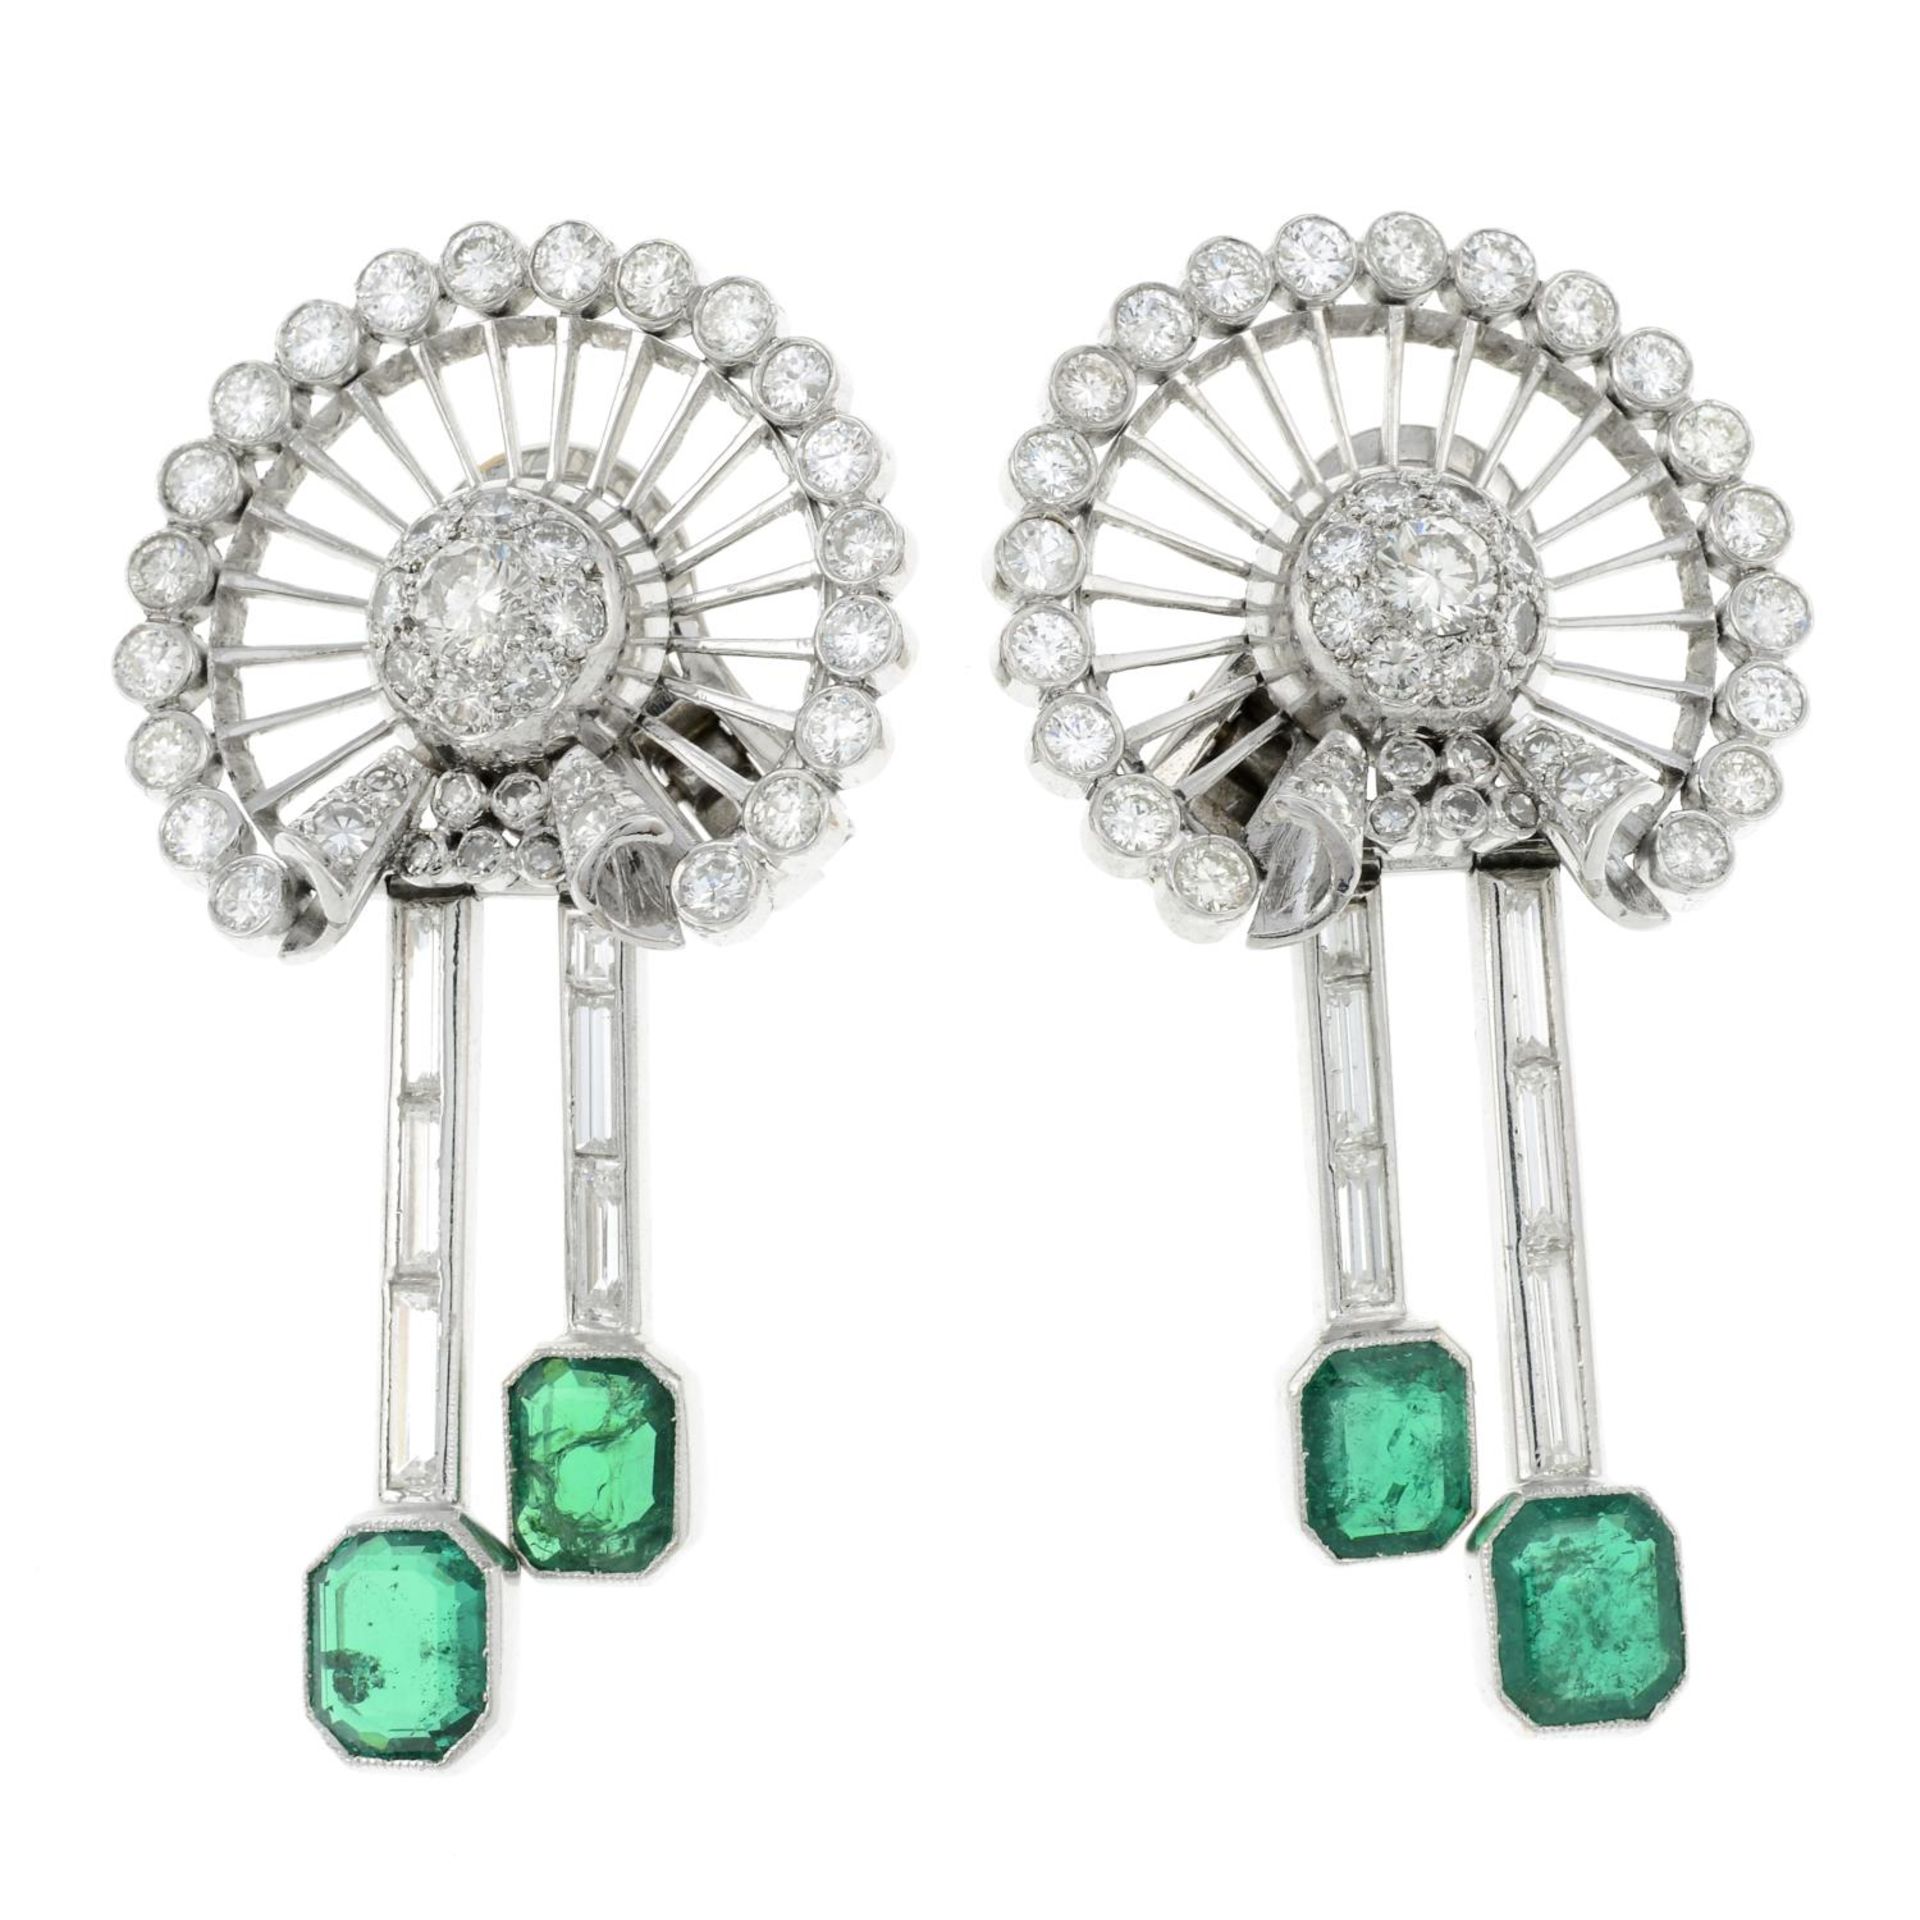 A pair of emerald and vari-cut diamond earrings, by Bulgari. - Bild 2 aus 3